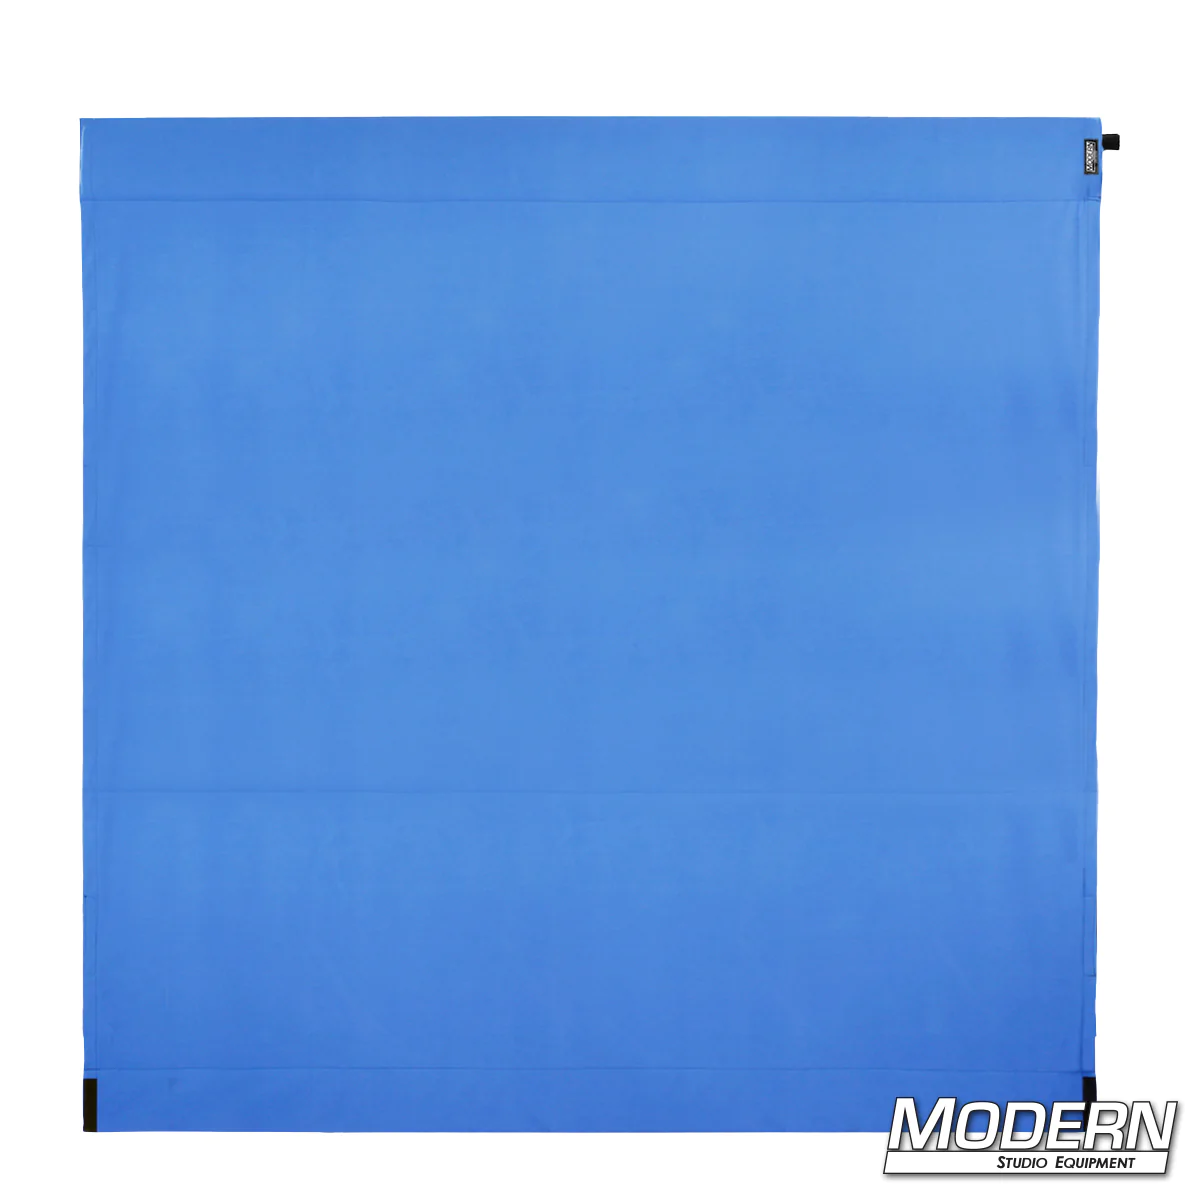 8' Wag Flag Fabric - Digital Blue